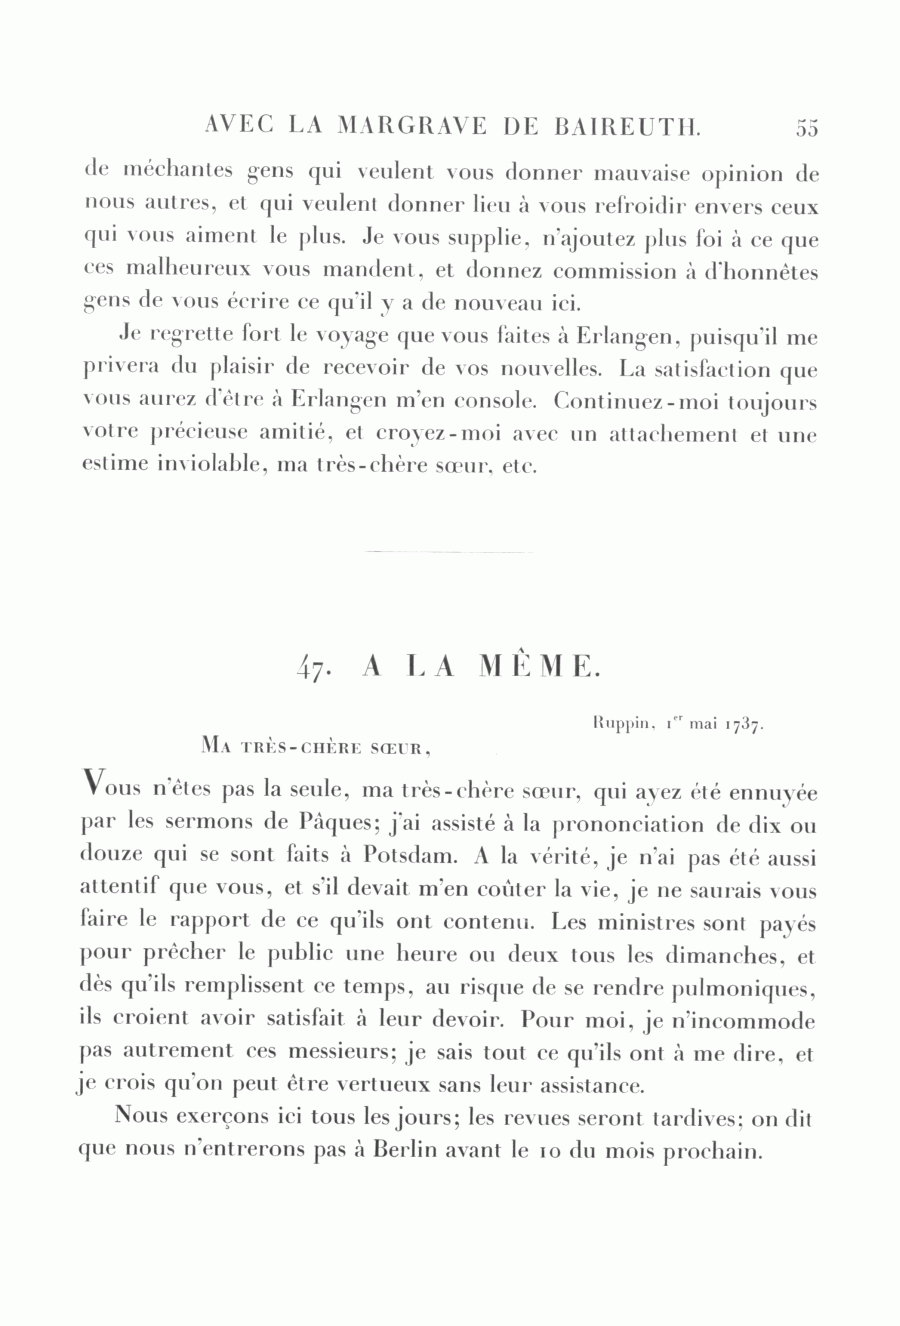 S. 55, Obj. 2